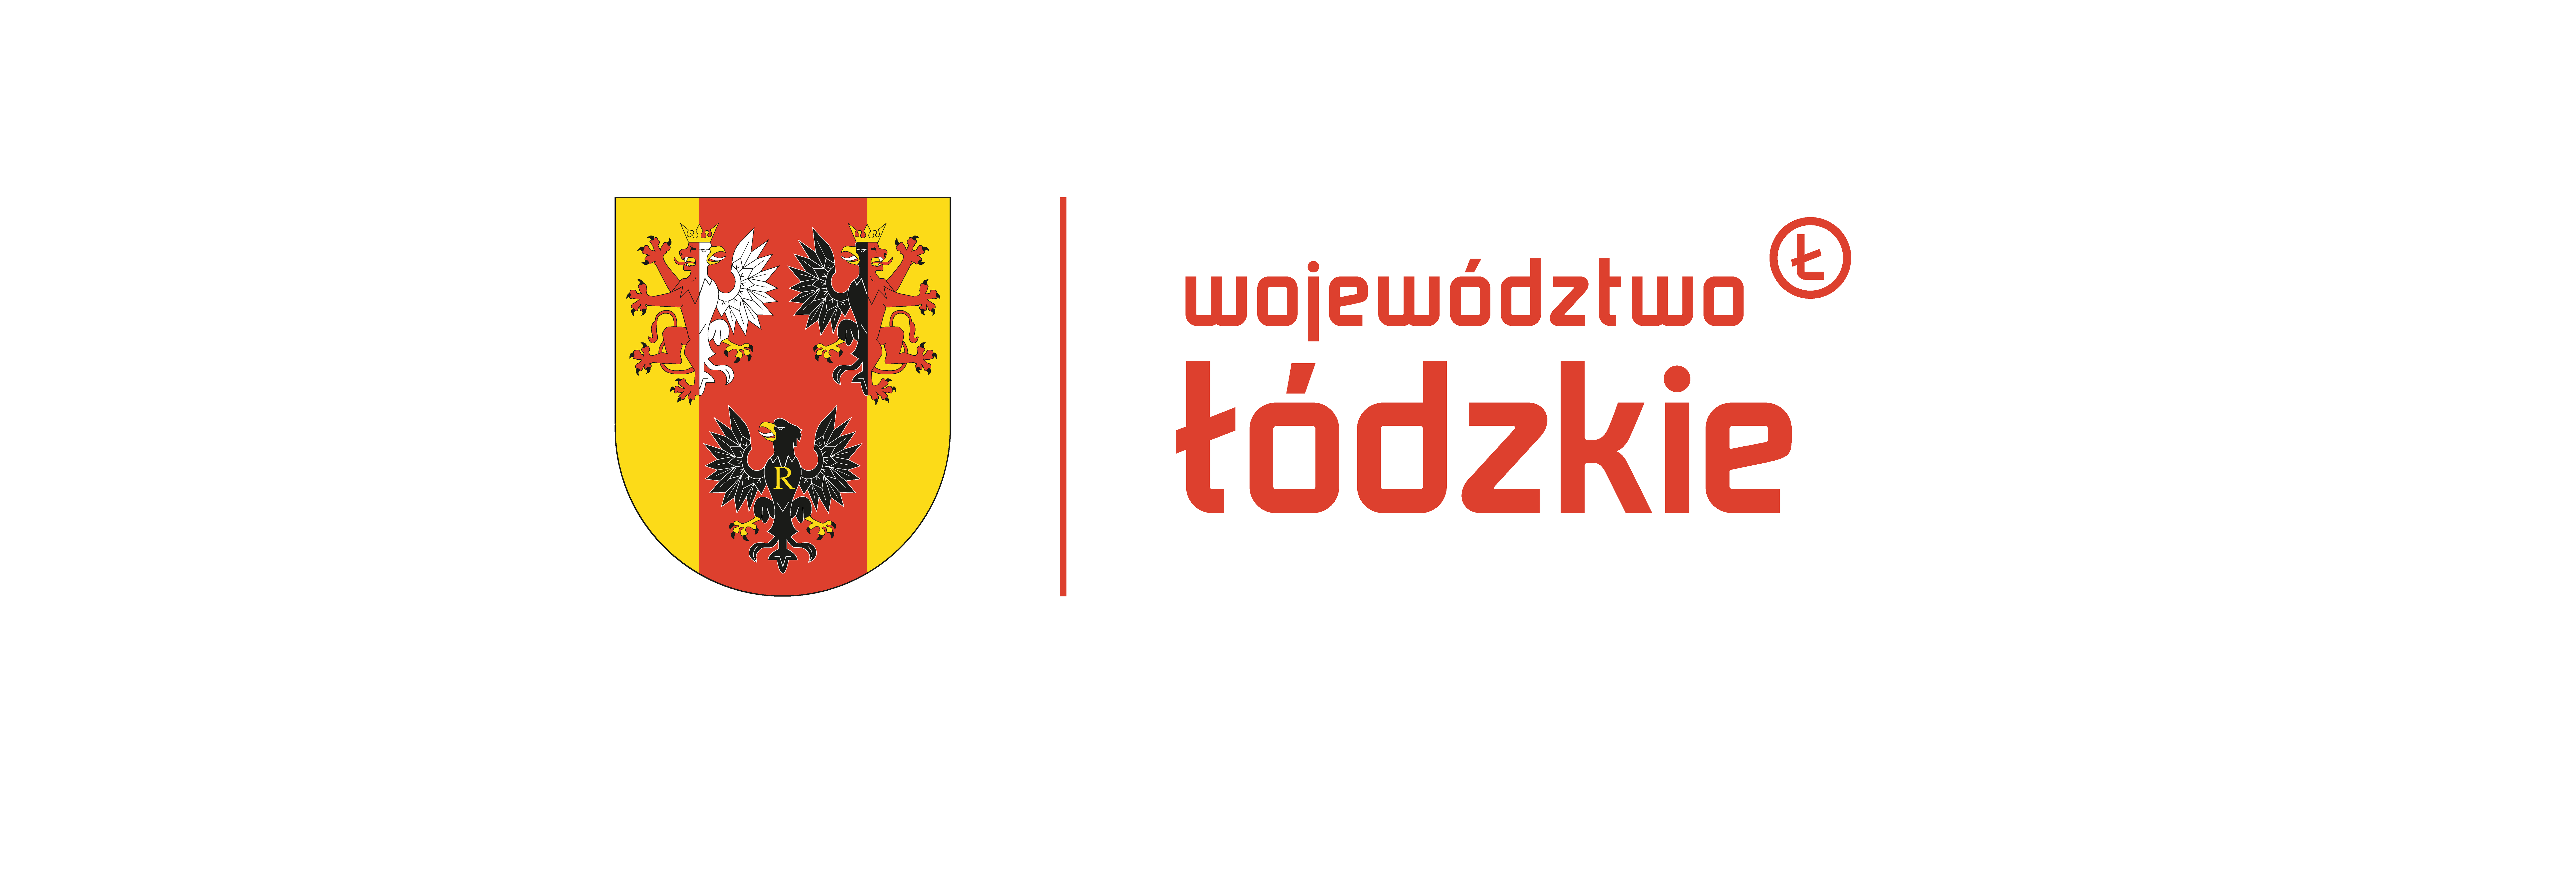 Dwuznak promocyjny województwa łódzkiego złożony z herbu oraz napisu "województwo łódzkie" rozdzielonych pionową, czerwoną linią.